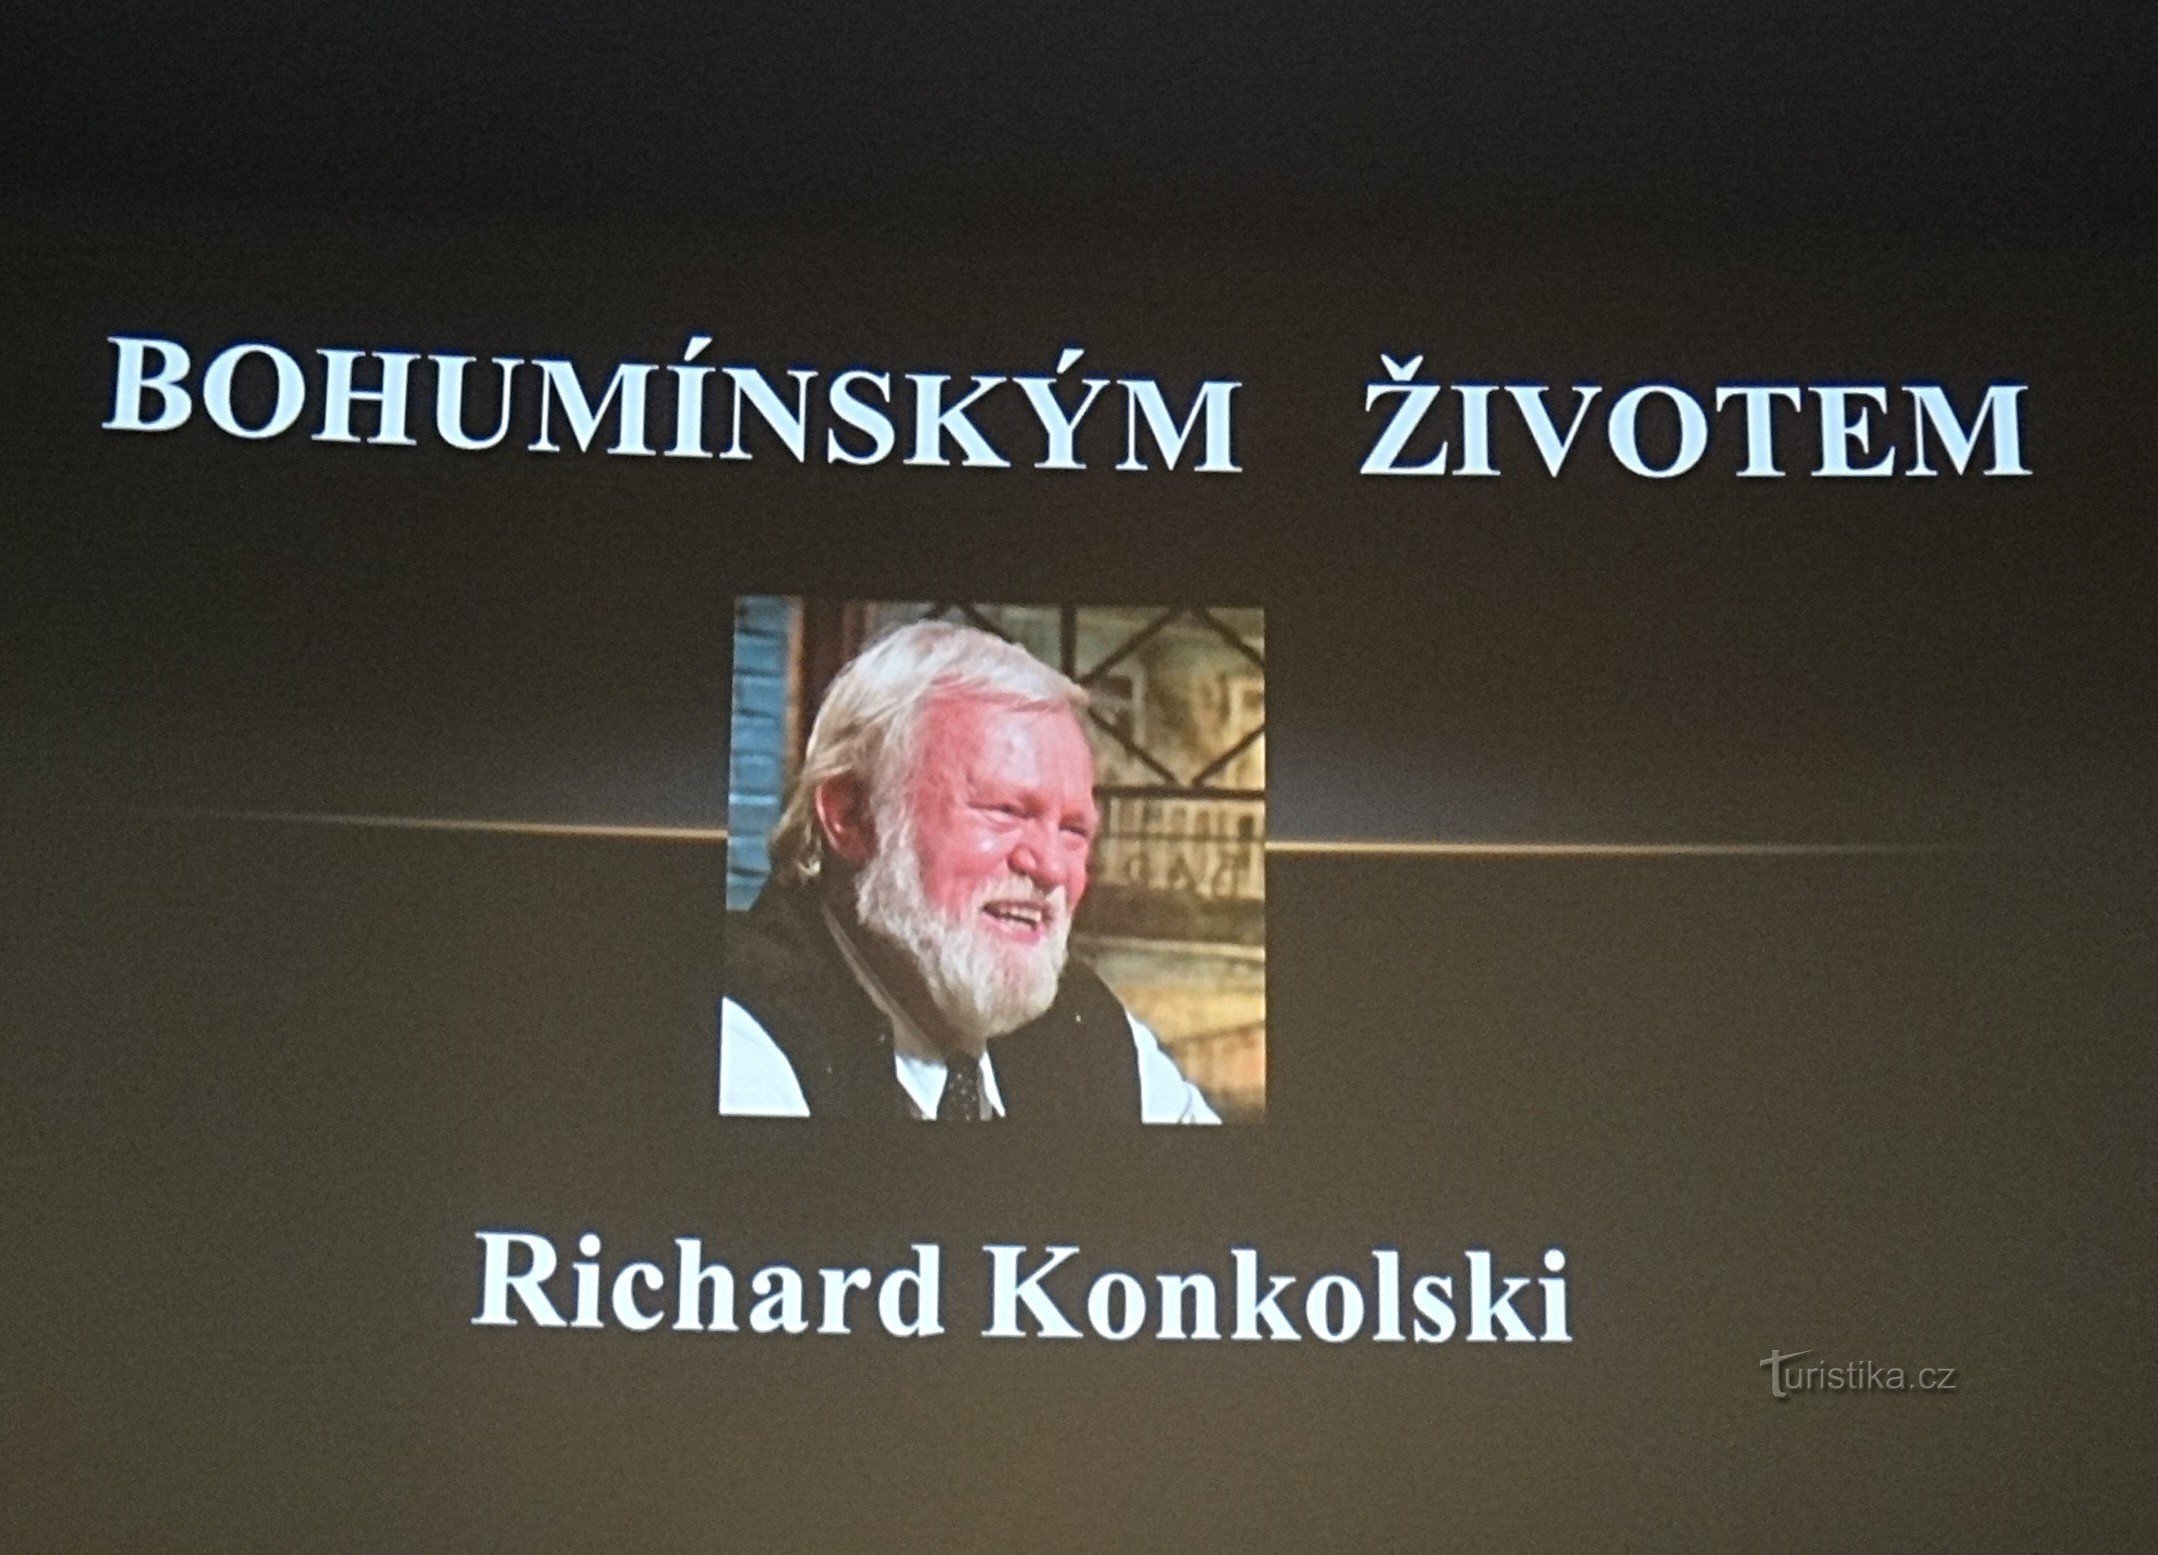 Richard Konkolski govori u kinu